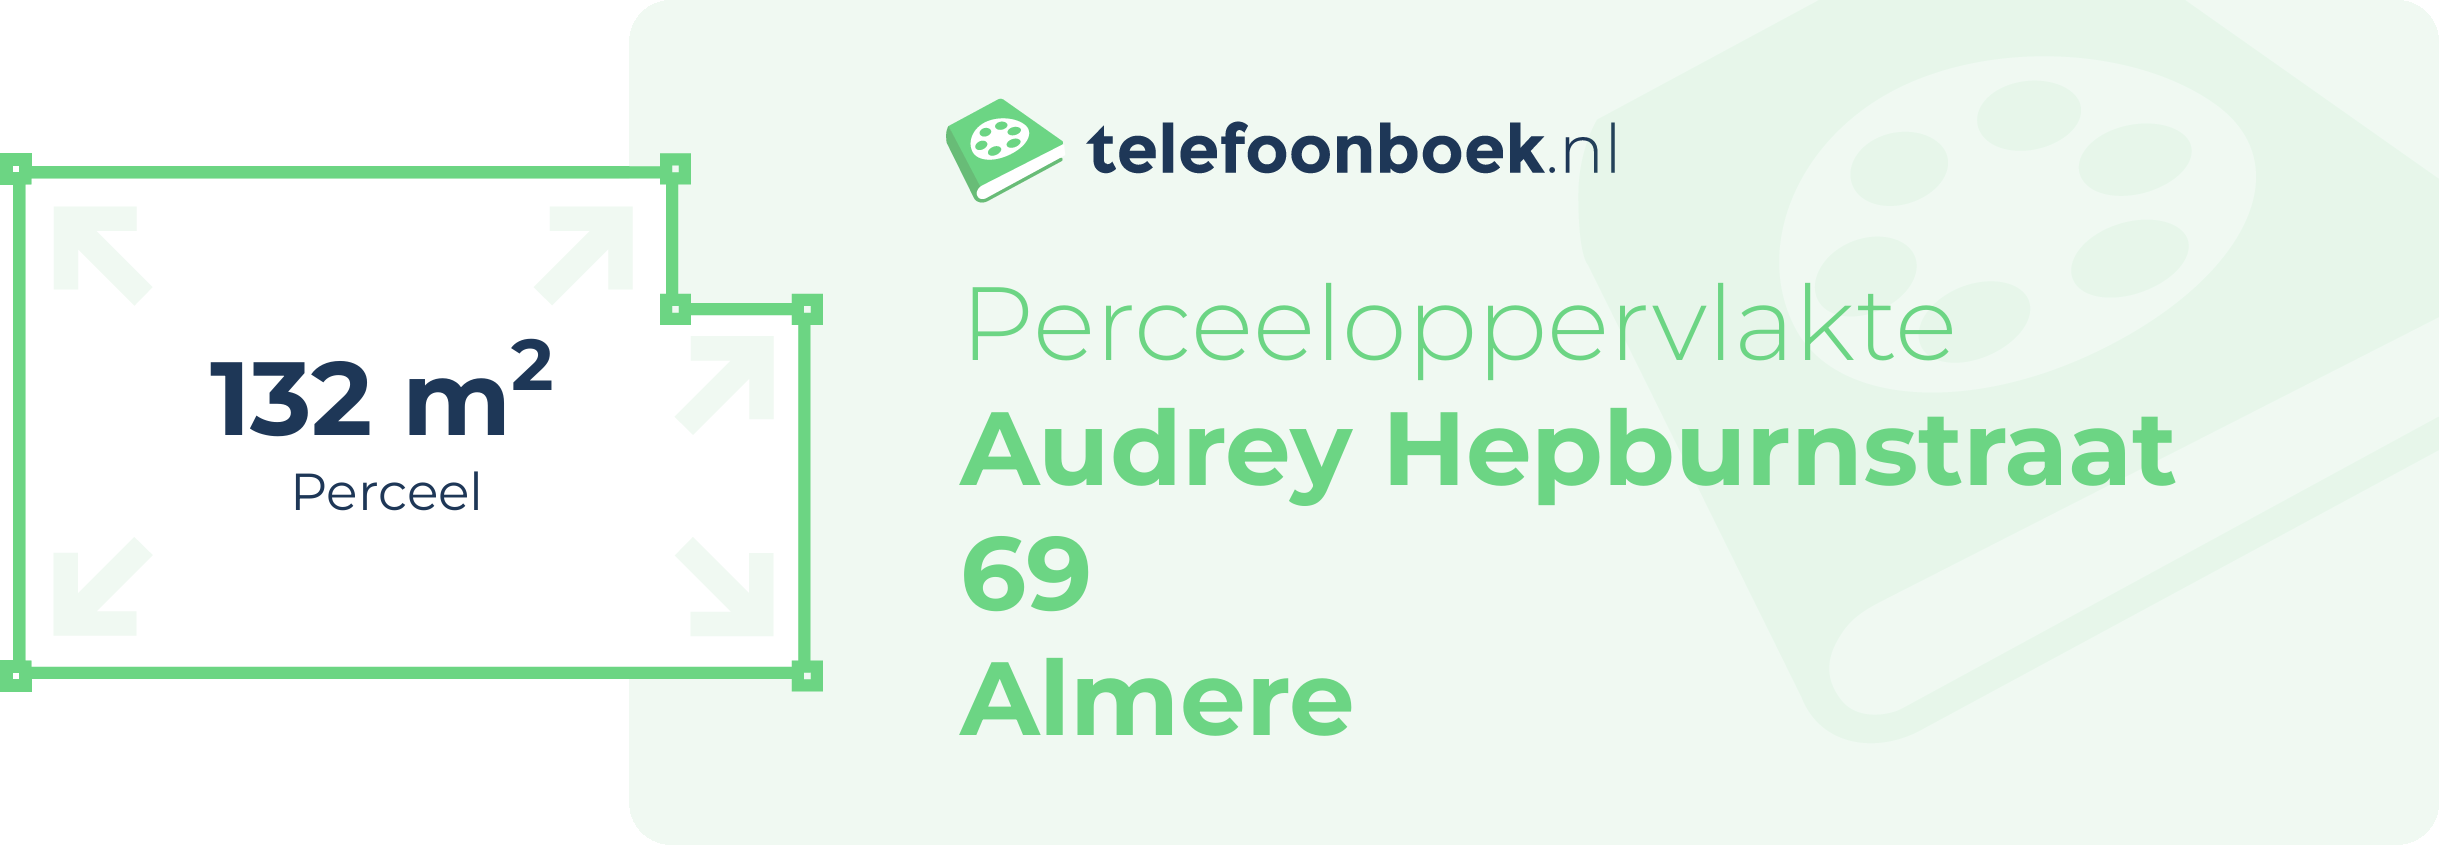 Perceeloppervlakte Audrey Hepburnstraat 69 Almere